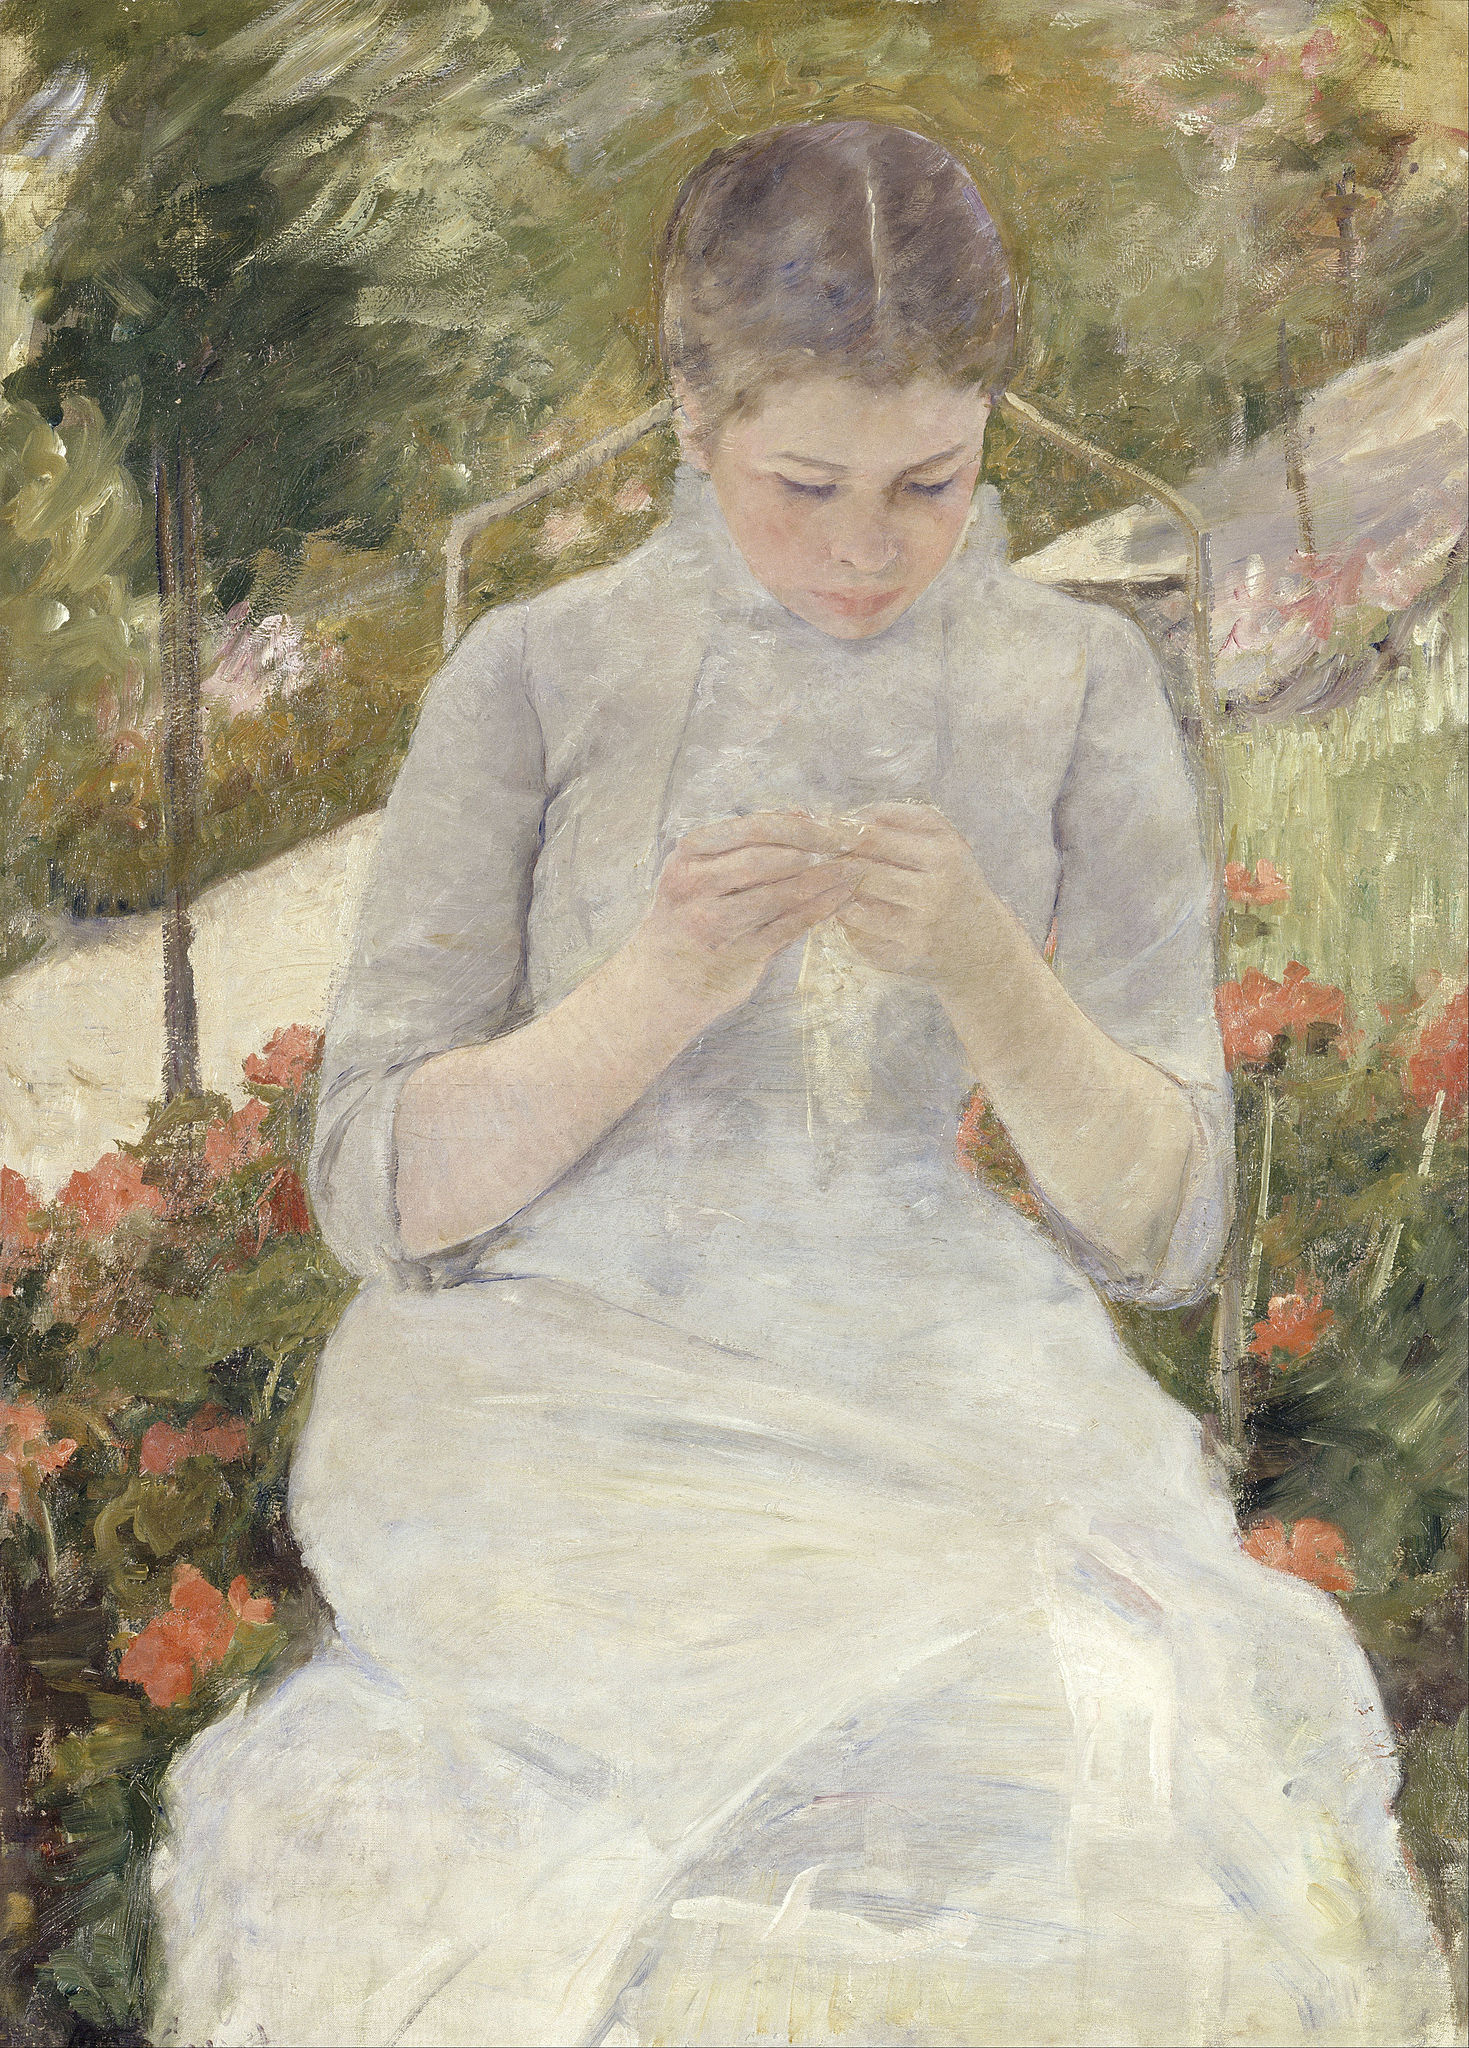 فتاة في الحديقة by Mary Cassatt - 1880-1882 - الأبعاد: 92 × 65 سم 